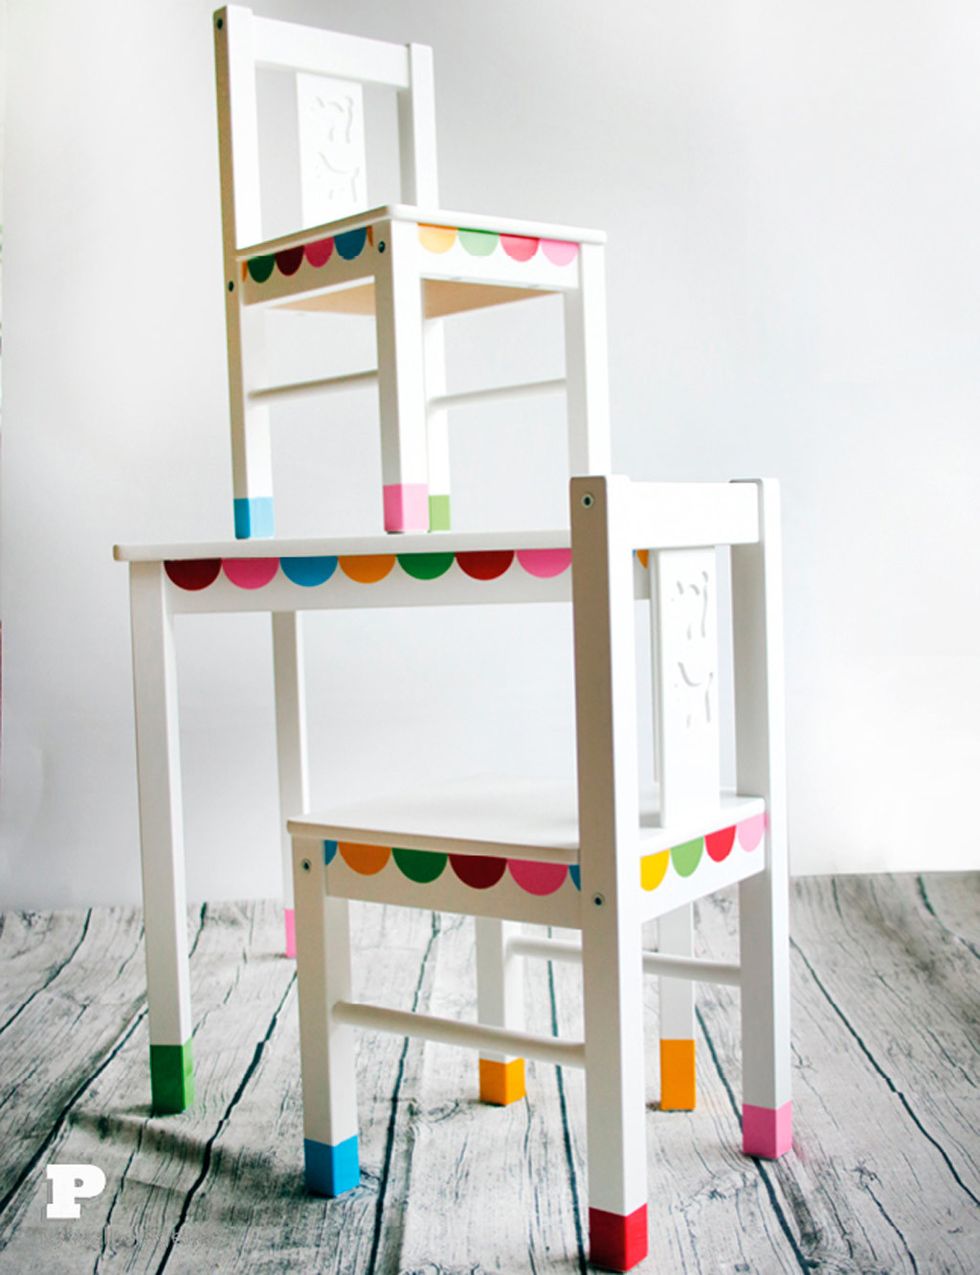 <p>Las clásicas sillas y mesa <i>Kritter,</i> de Ikea, cobran una nueva vida gracias al vinilo adhesivo de colores que decora el borde y&nbsp; la parte inferior de las patas. Todo el proceso, en <a href="http://pysselbolaget.se/en/2014/05/20/kids-table-makeover/" title="Pysselbolaget" target="_blank">Pysselbolaget.</a></p>